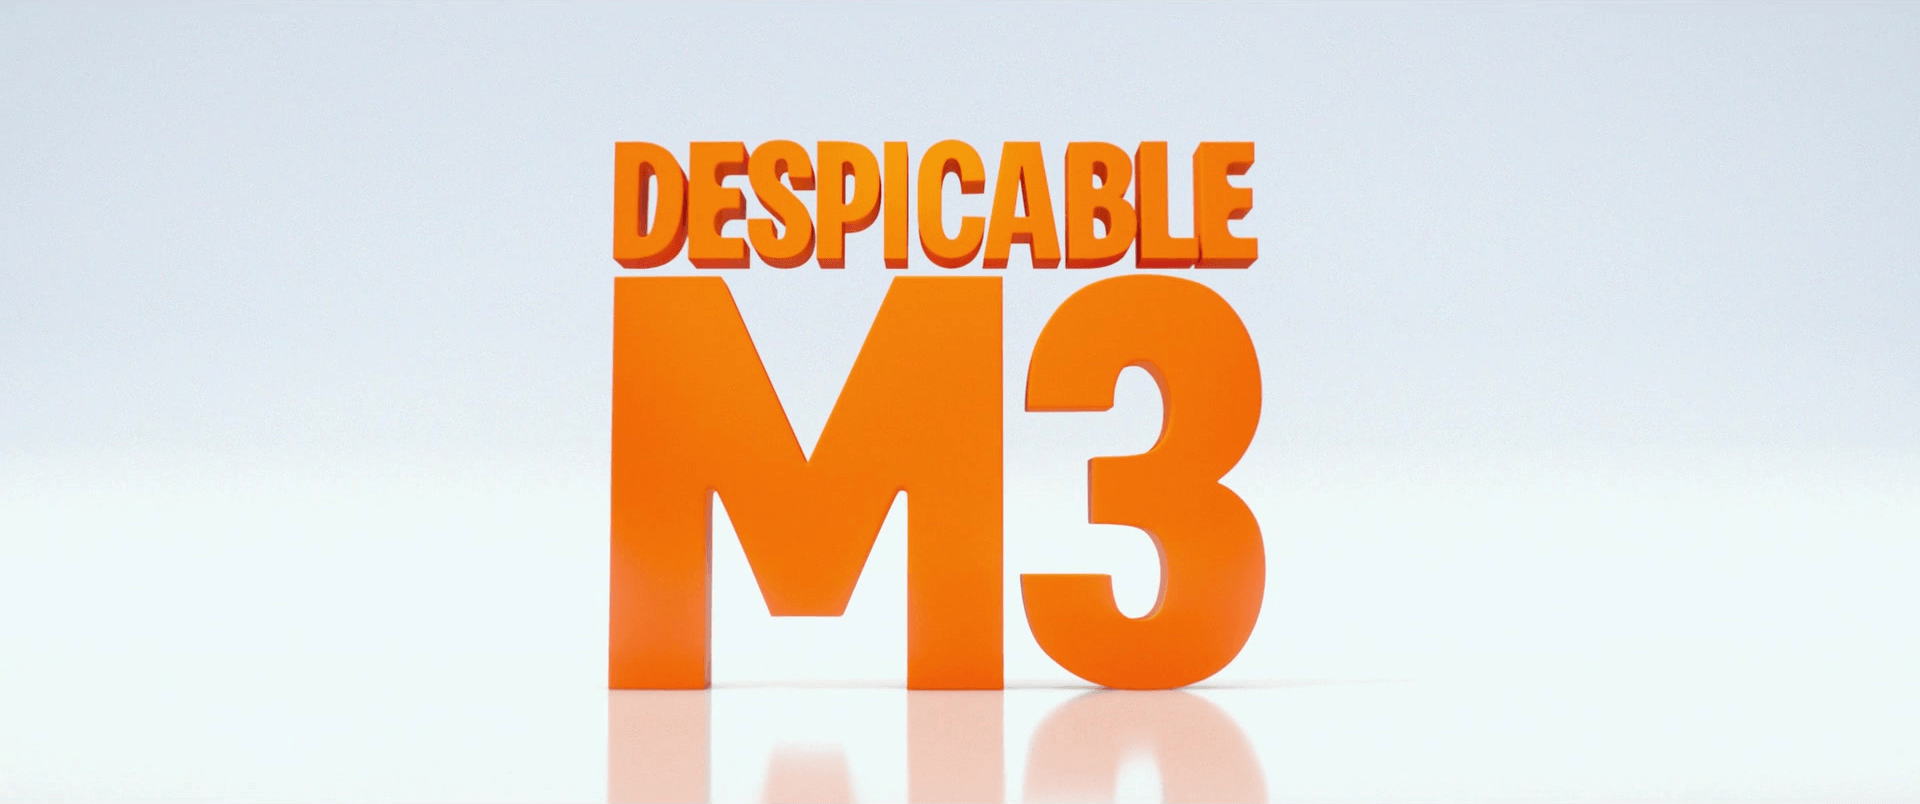 Despicable Me 1 Logo - Despicable Me 3